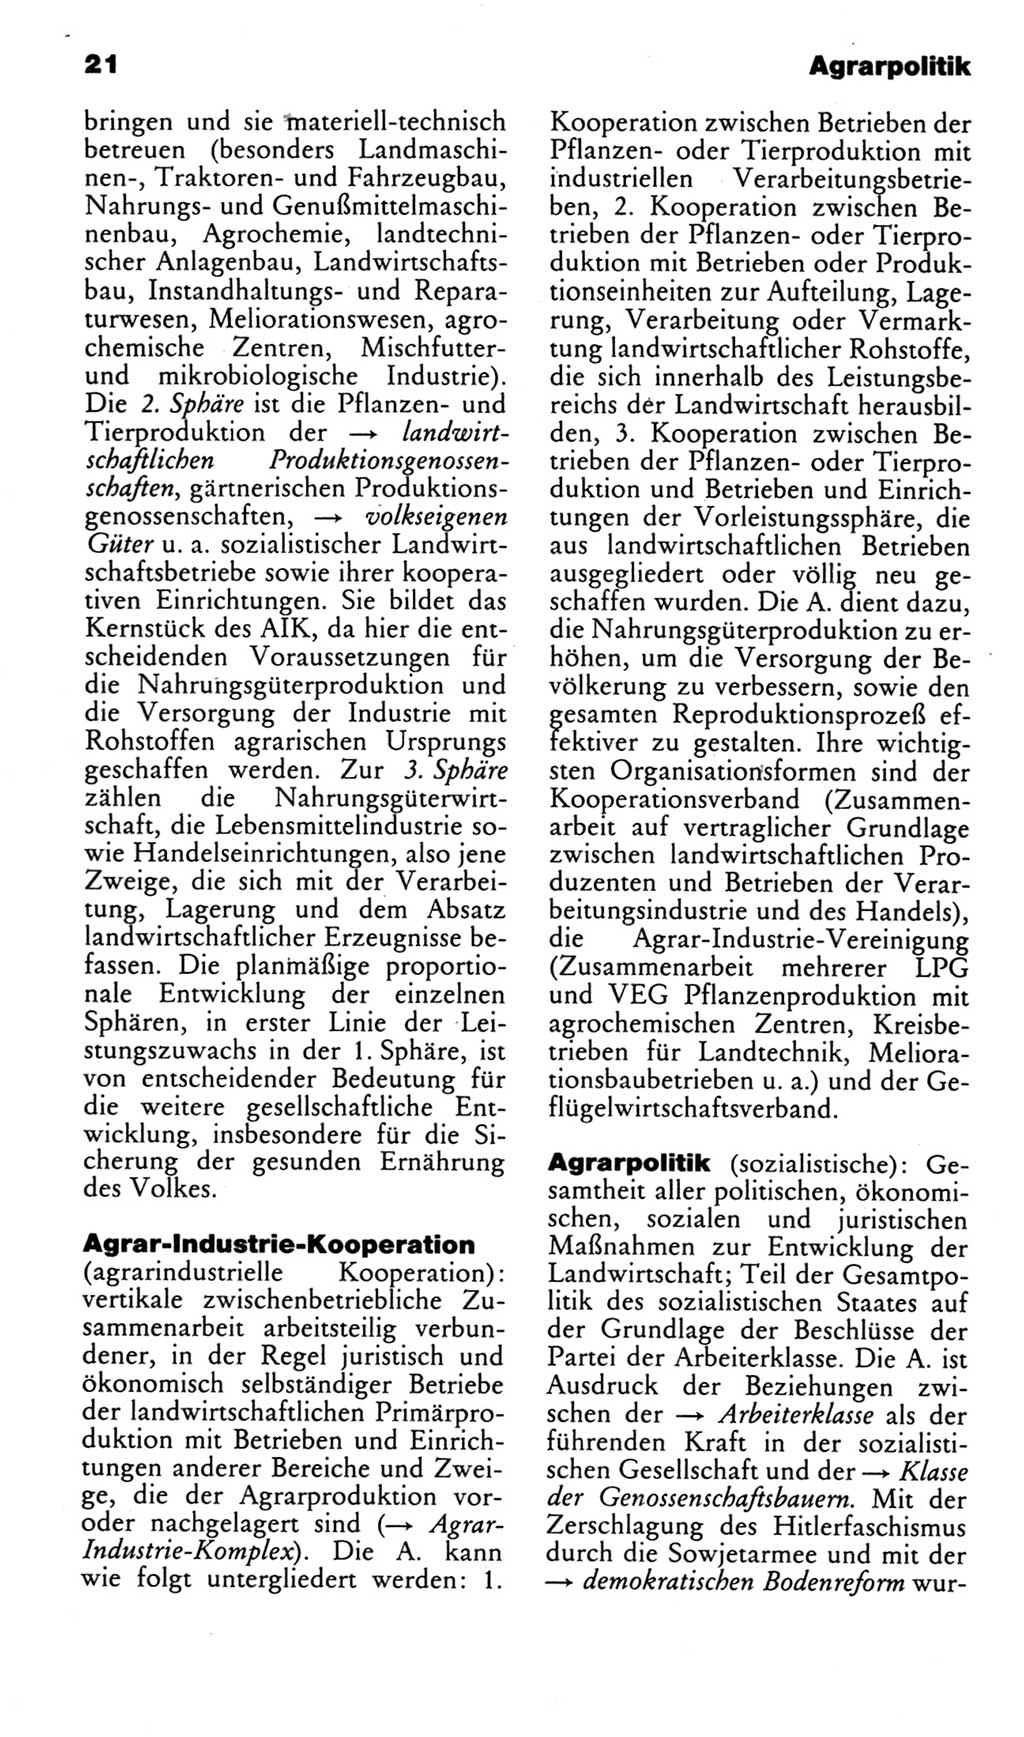 Kleines politisches Wörterbuch [Deutsche Demokratische Republik (DDR)] 1985, Seite 21 (Kl. pol. Wb. DDR 1985, S. 21)